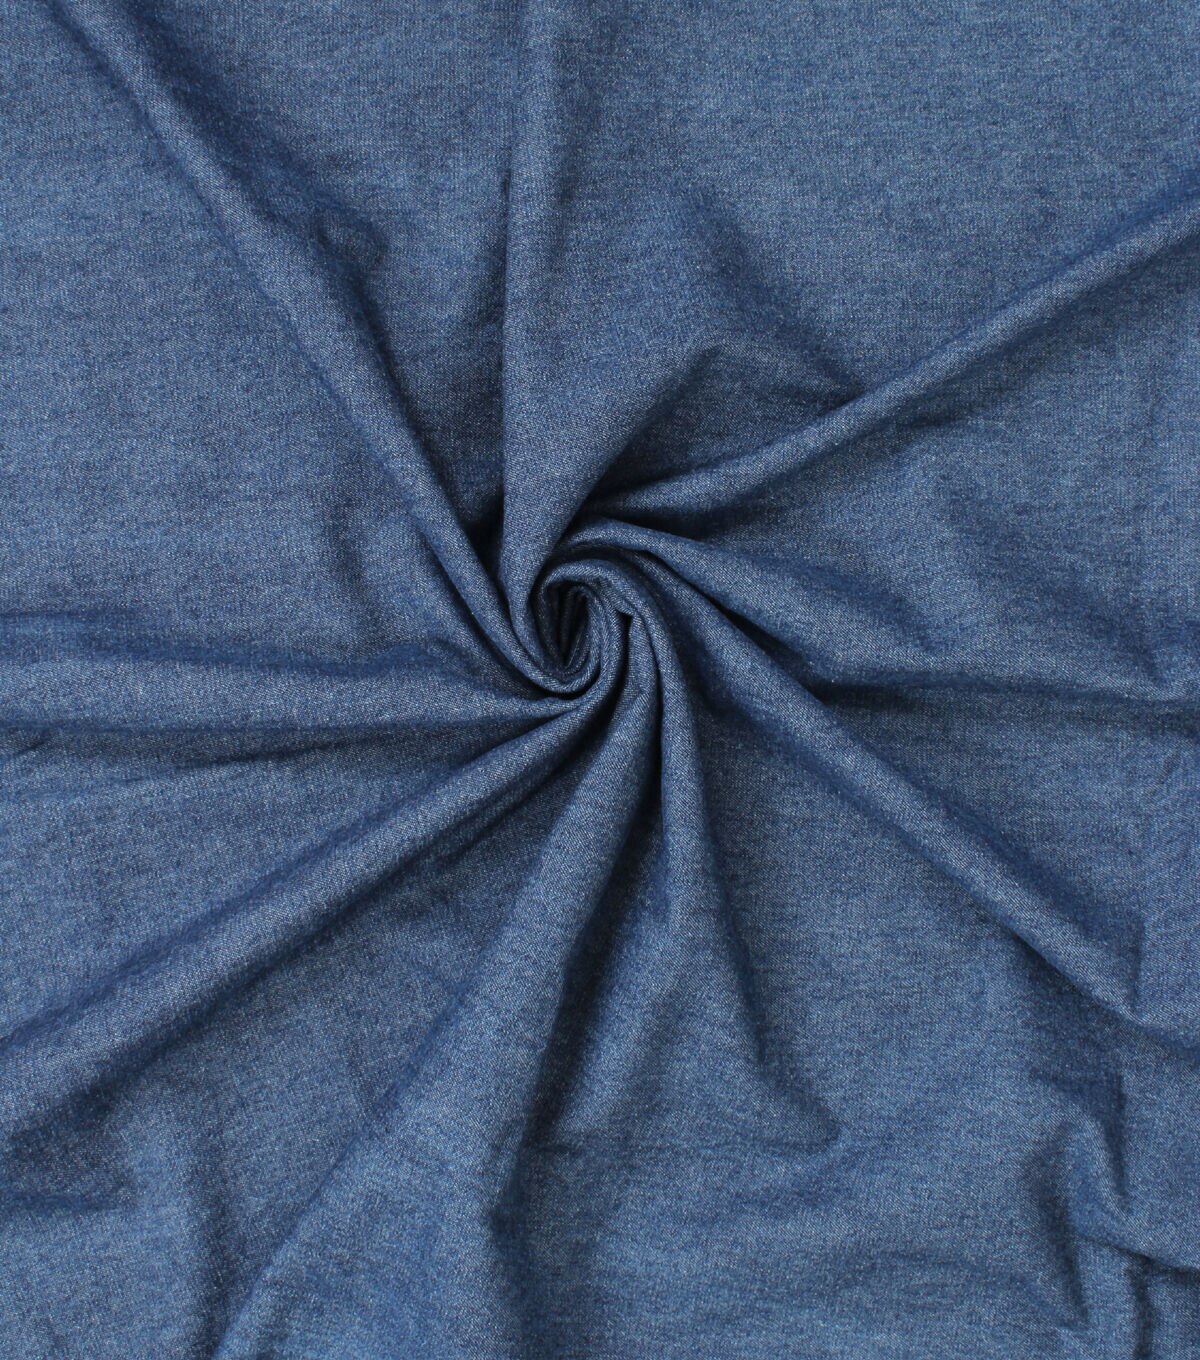 Blue Heavy Denim Fabric 1381 – Fabrics4Fashion